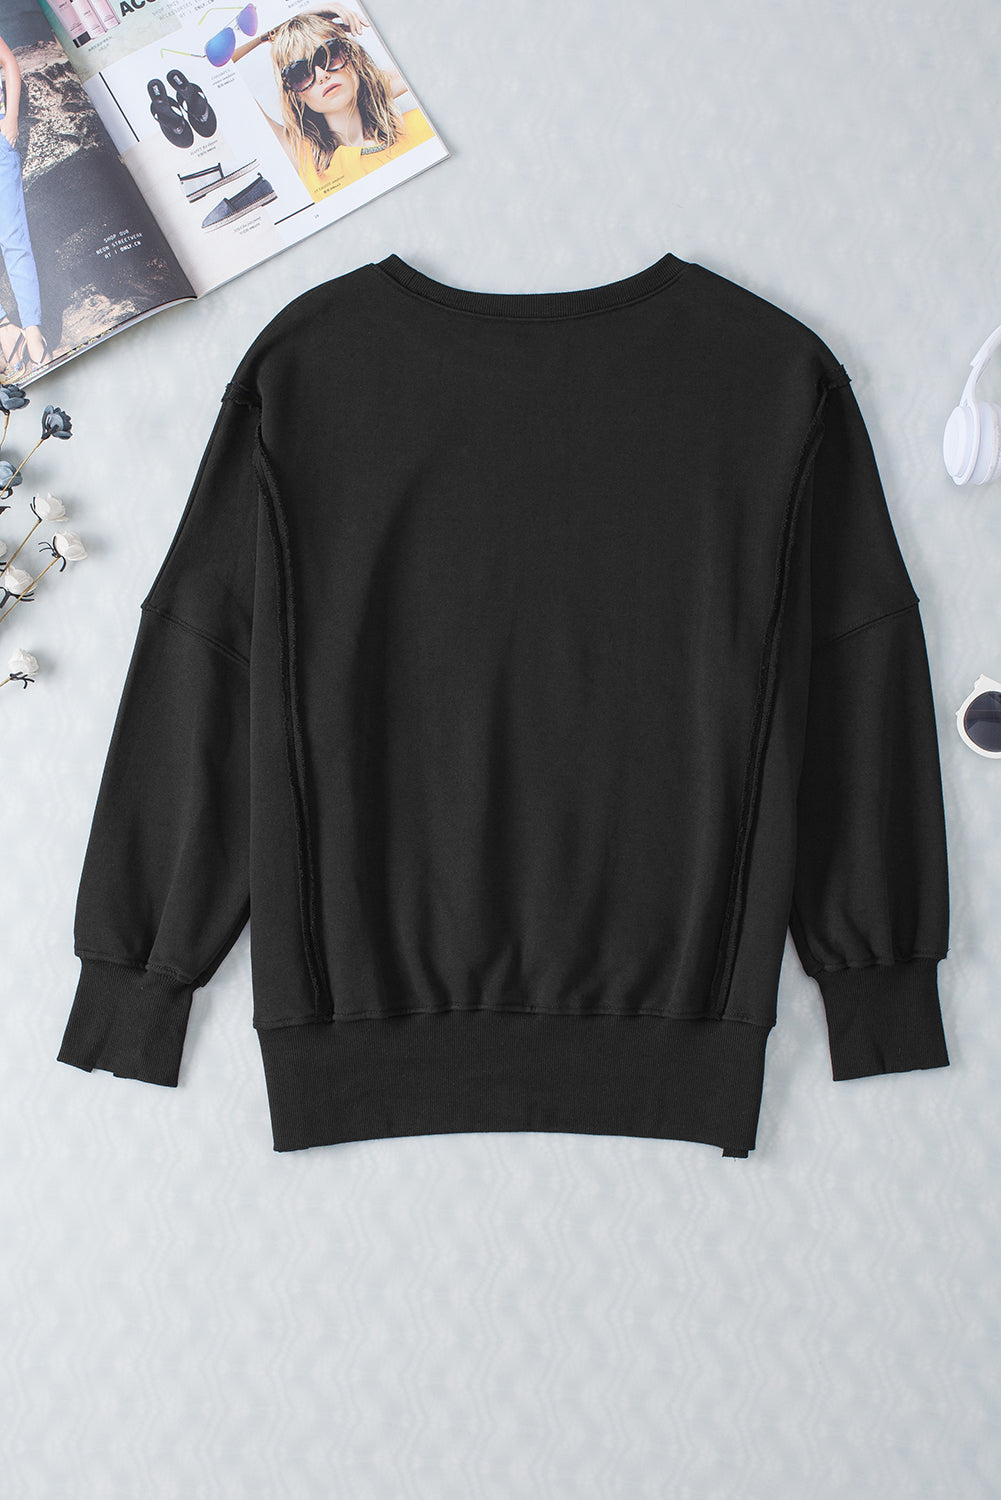 Schwarzes Sweatshirt mit freiliegender Naht und überschnittener Schulter, Schlitz und hohem Saum